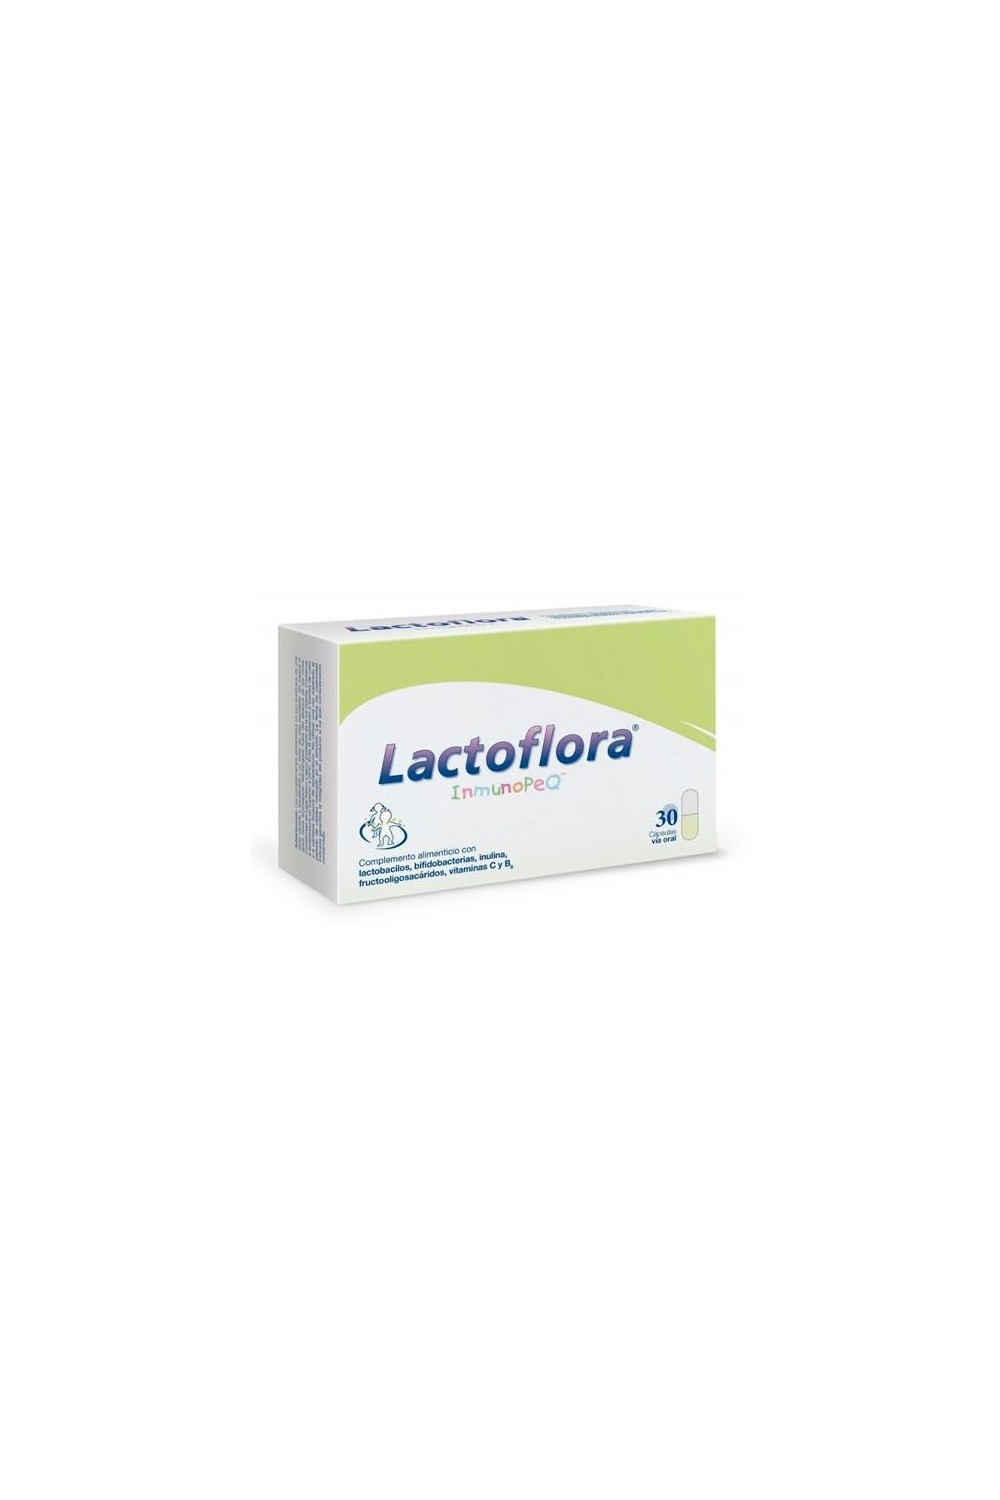 STADA - Lactoflora Inmunopeq 30 Capsules